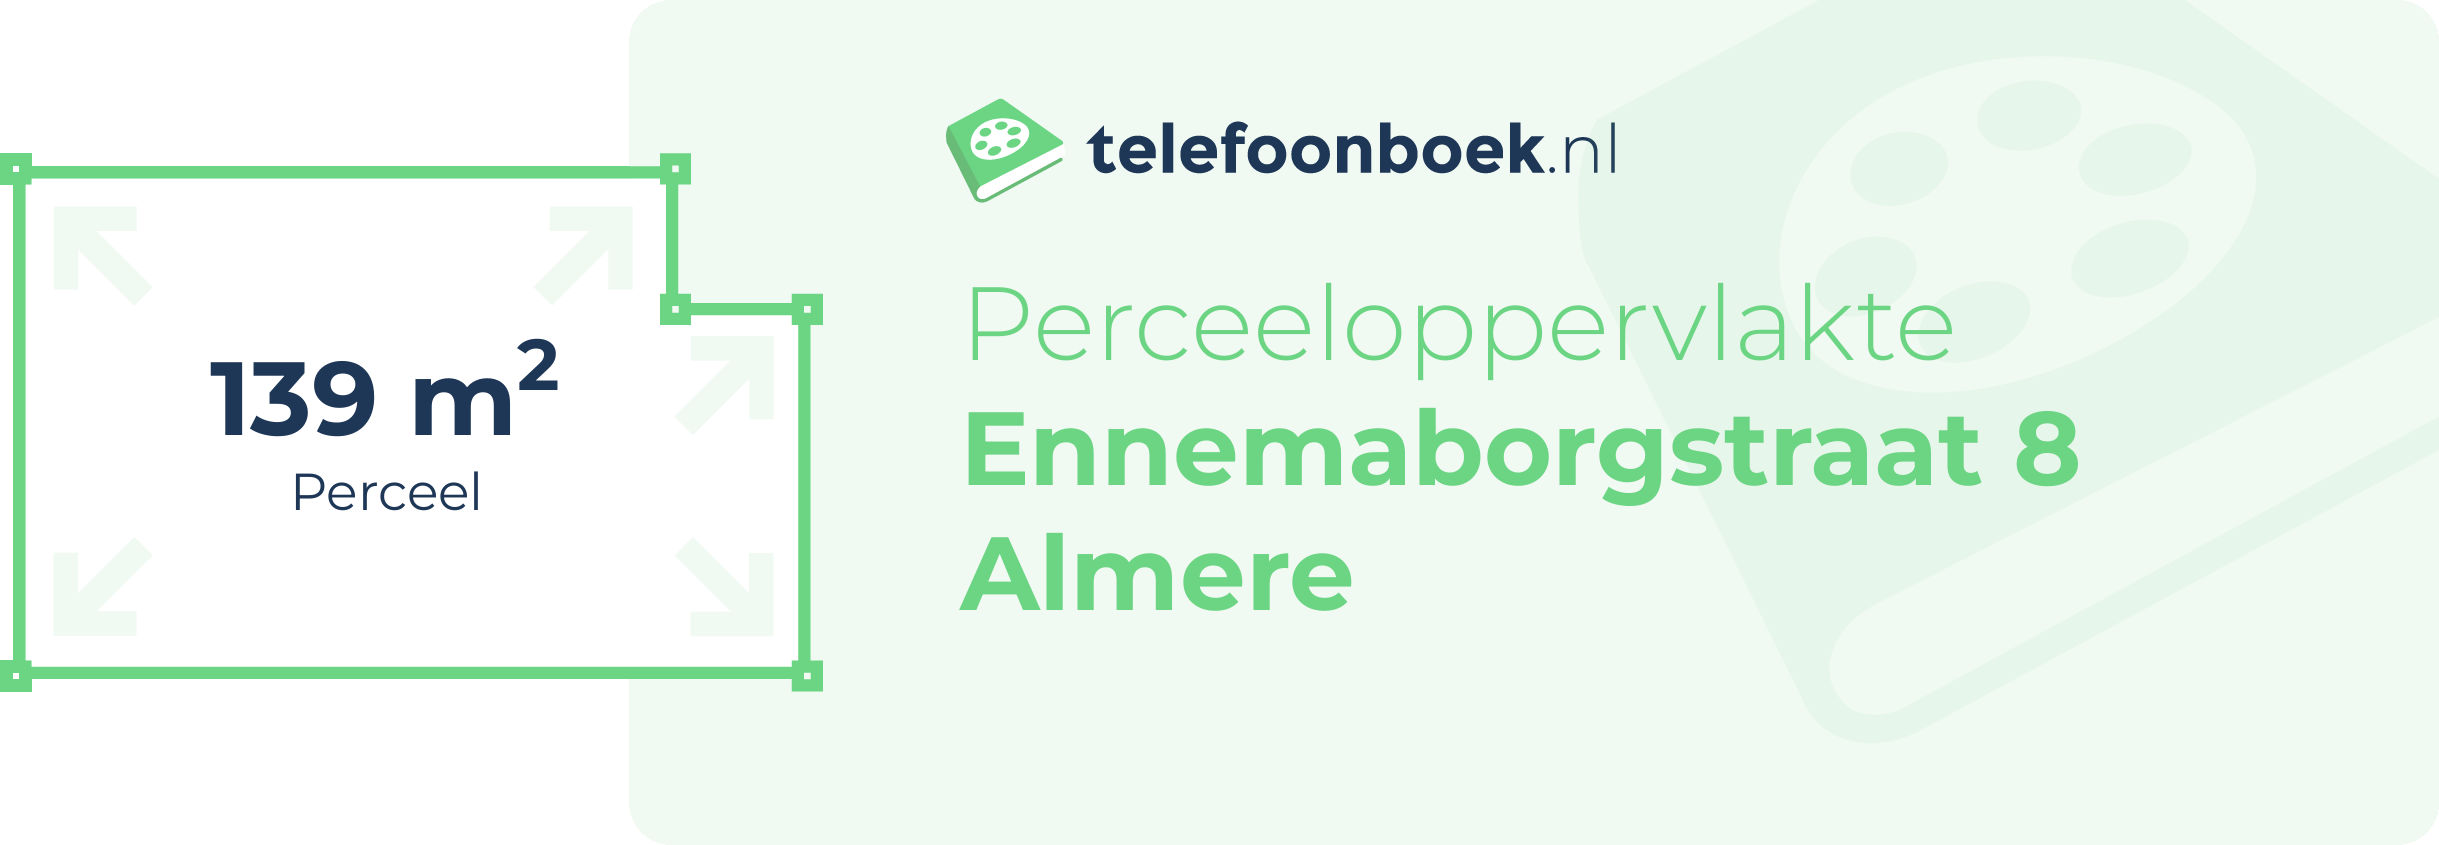 Perceeloppervlakte Ennemaborgstraat 8 Almere